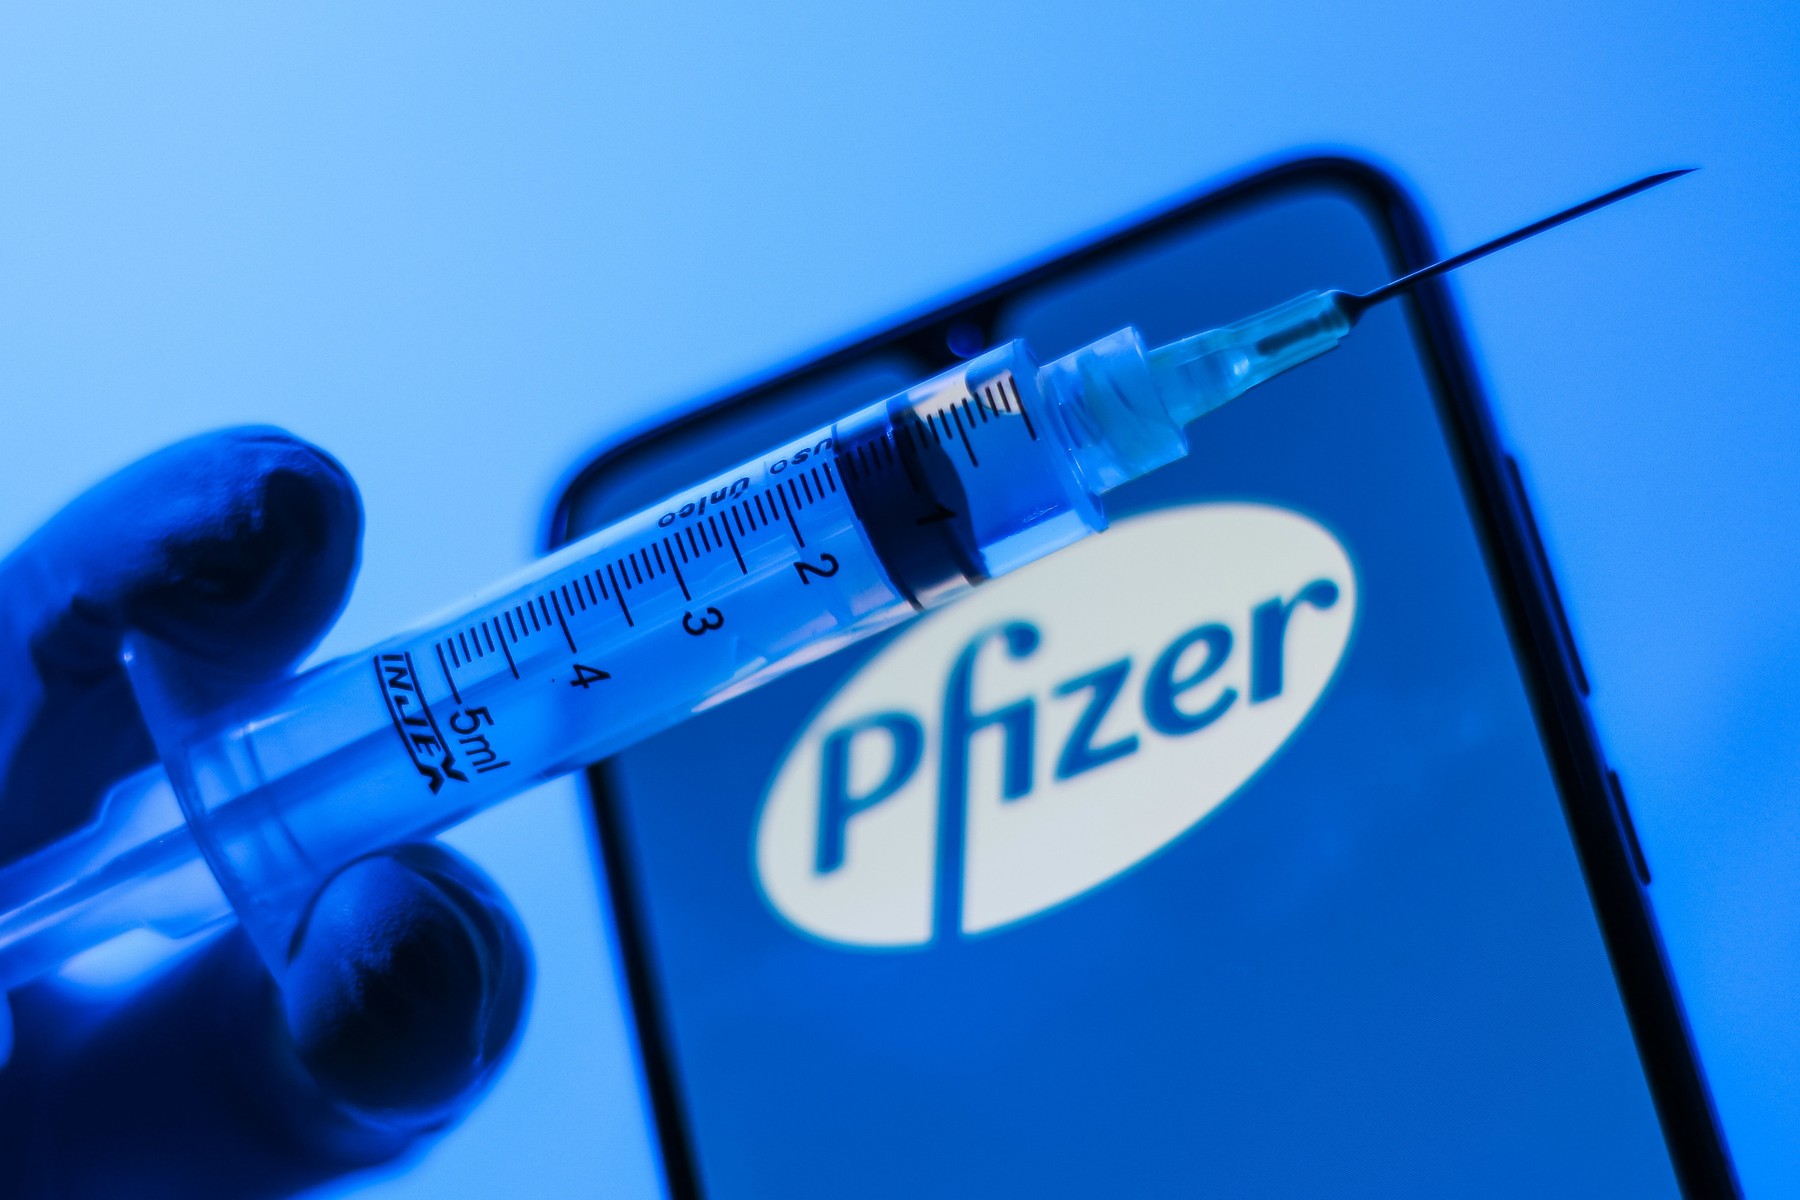 Қазақстандықтар Pfizer вакцинасының екі дозасын ақылы түрде ала алады - Цой